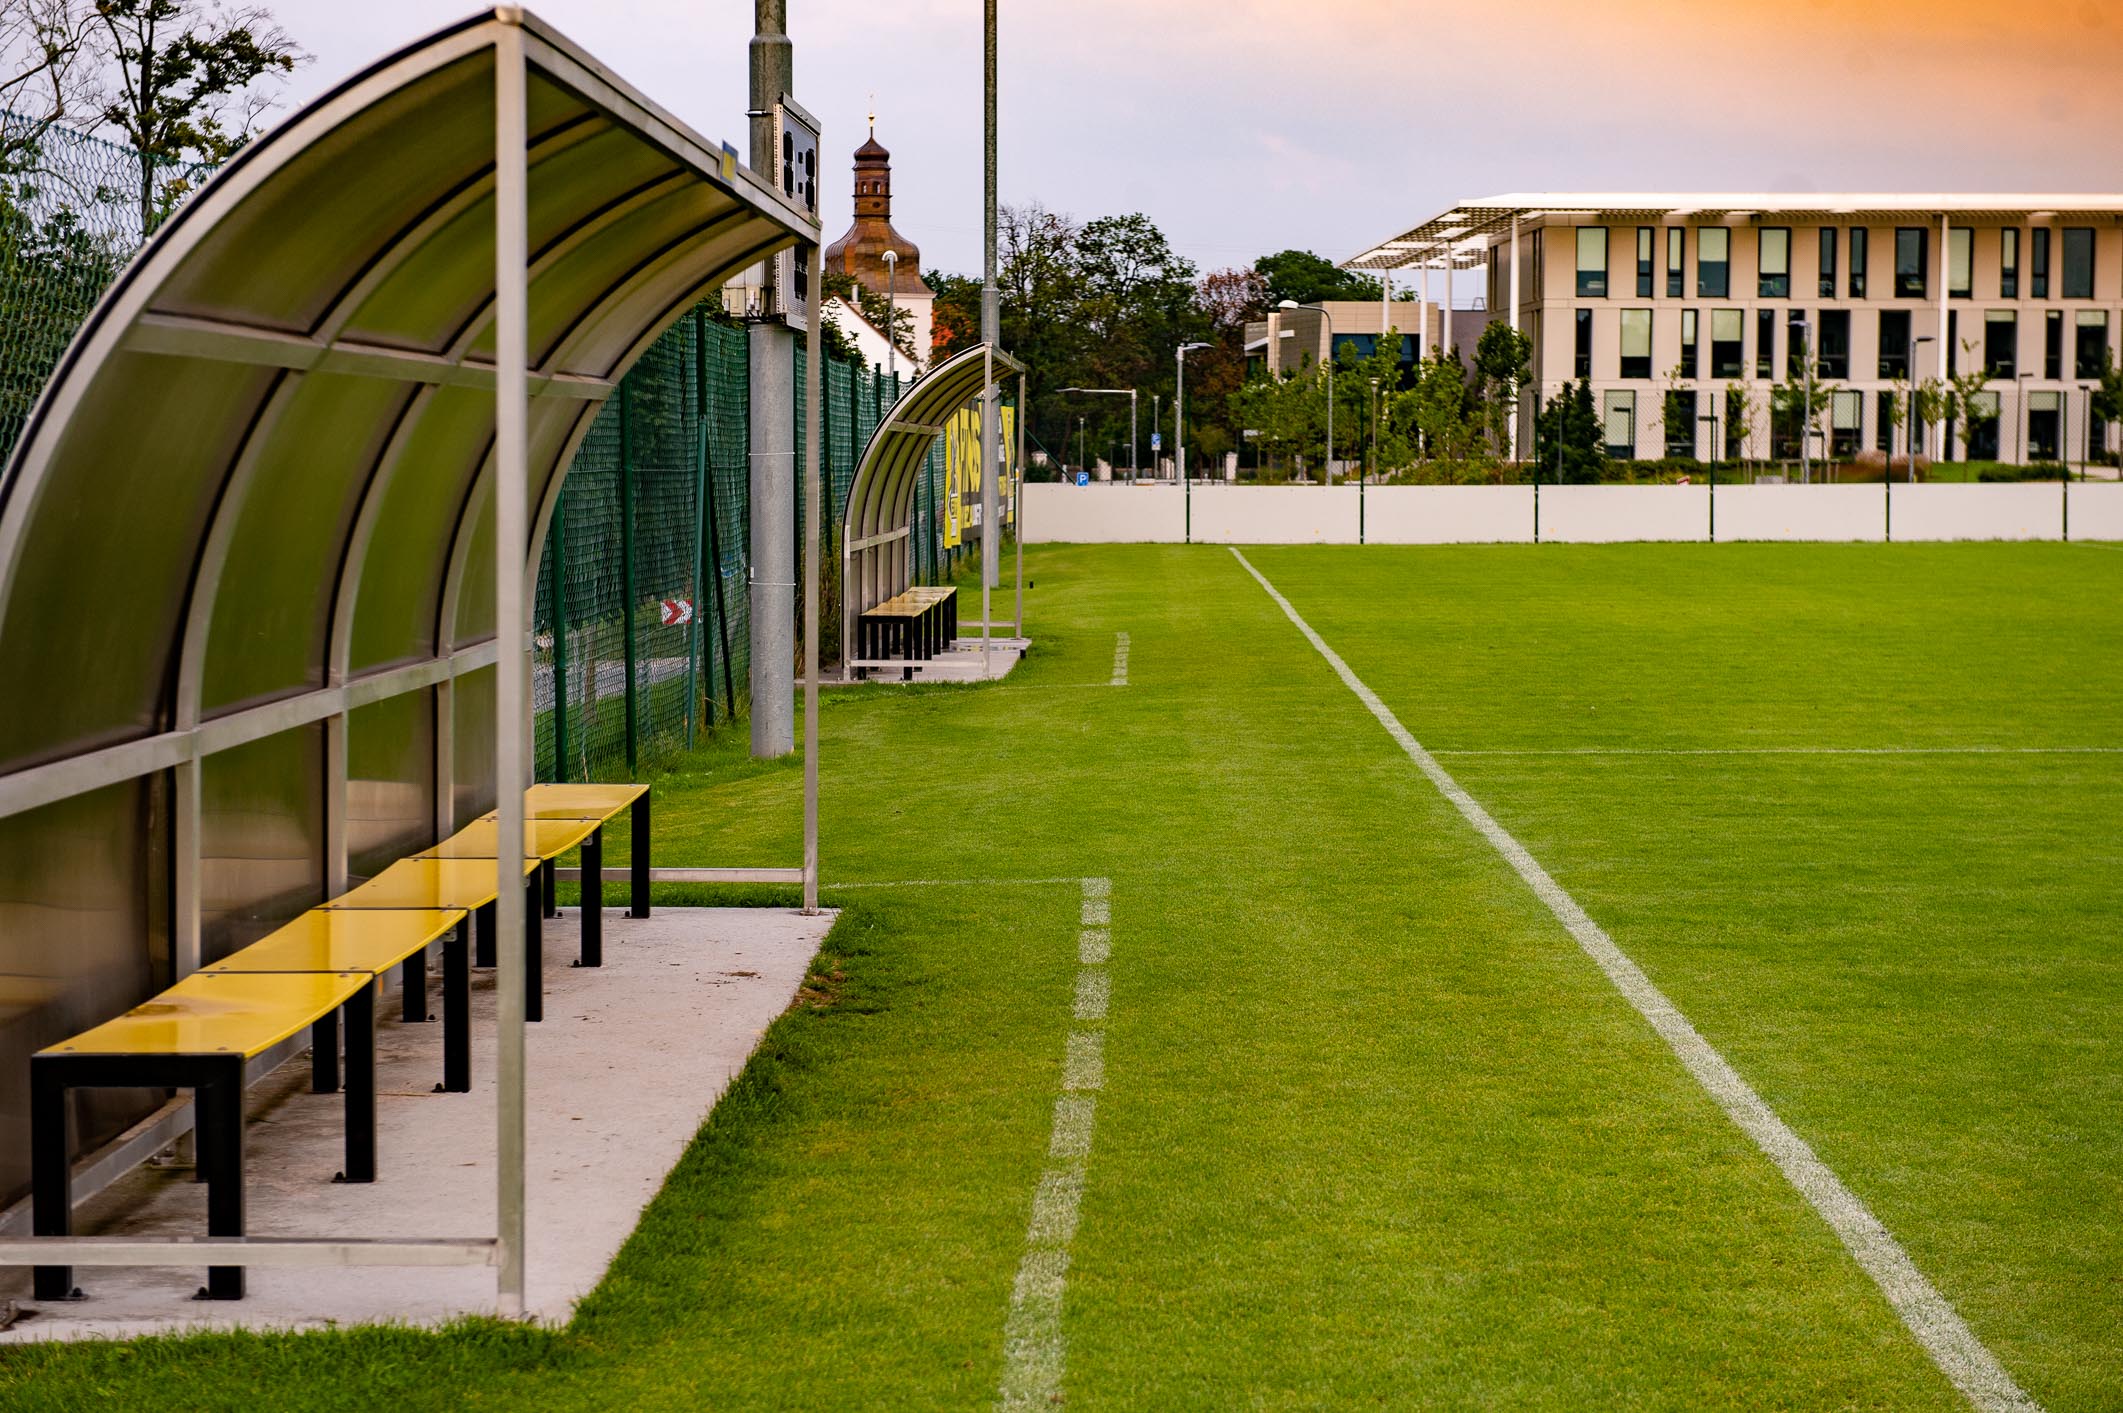 Realizacované fotbalové hřiště- pohled na střídačky, foto 2019 Martin Kabát